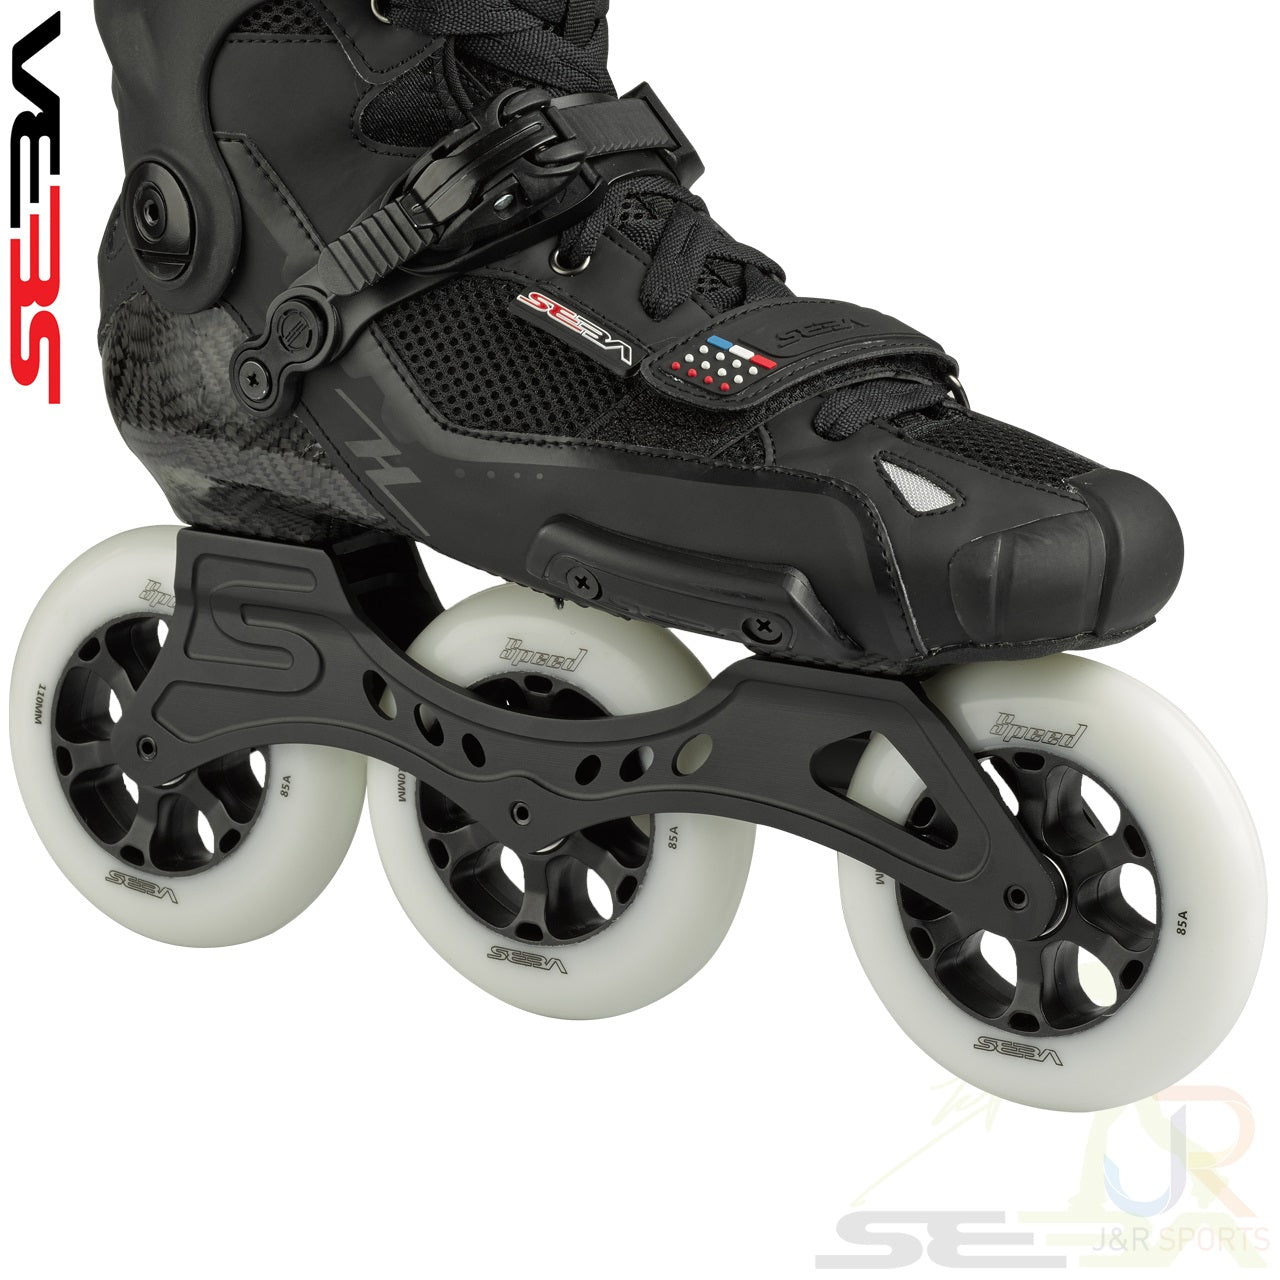 Seba 17' High Light Carbon 310 Inline Skates - Momma Trucker Skates